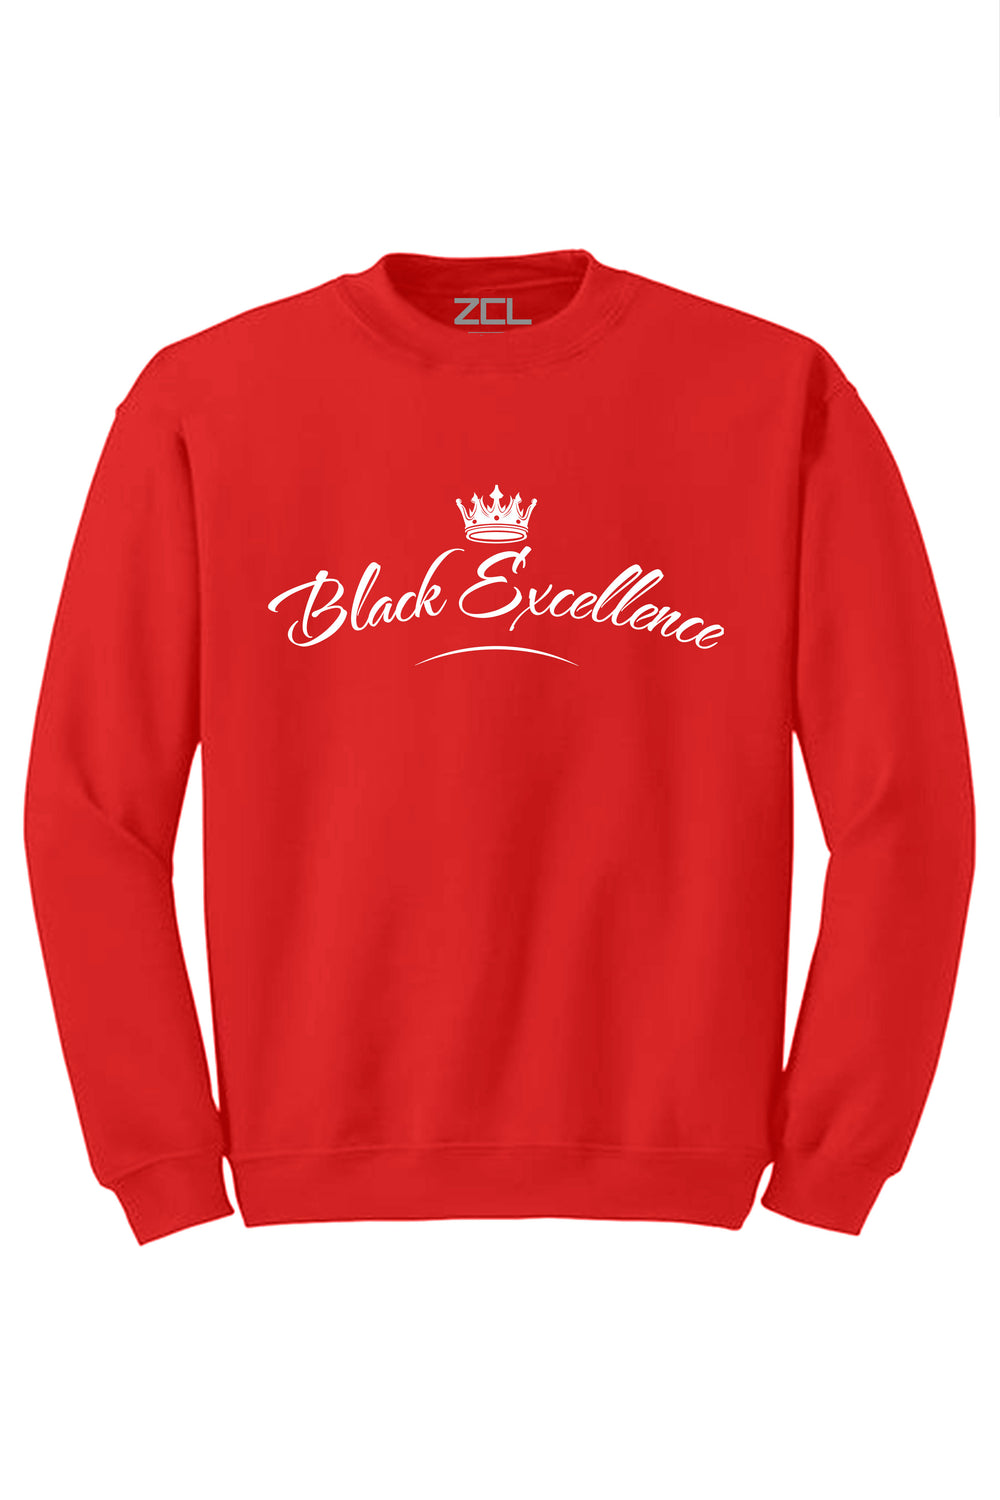 Black Excellence Crewneck Sweatshirt (White Logo) - Zamage